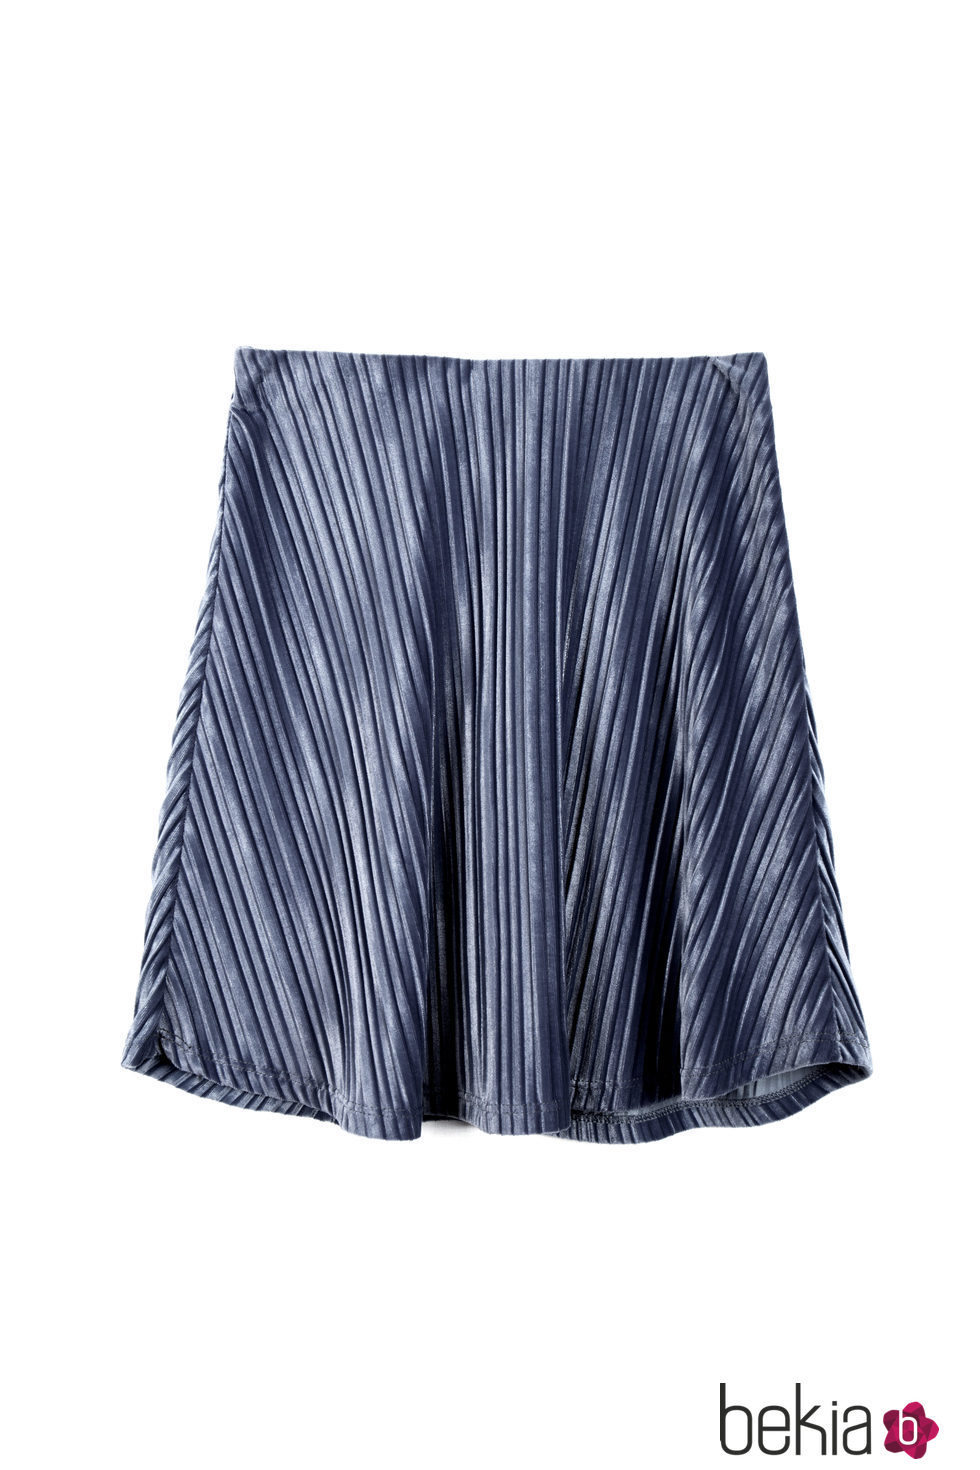 Falda azul de terciopelo con rayas verticales de la línea Xmas punk de Shana